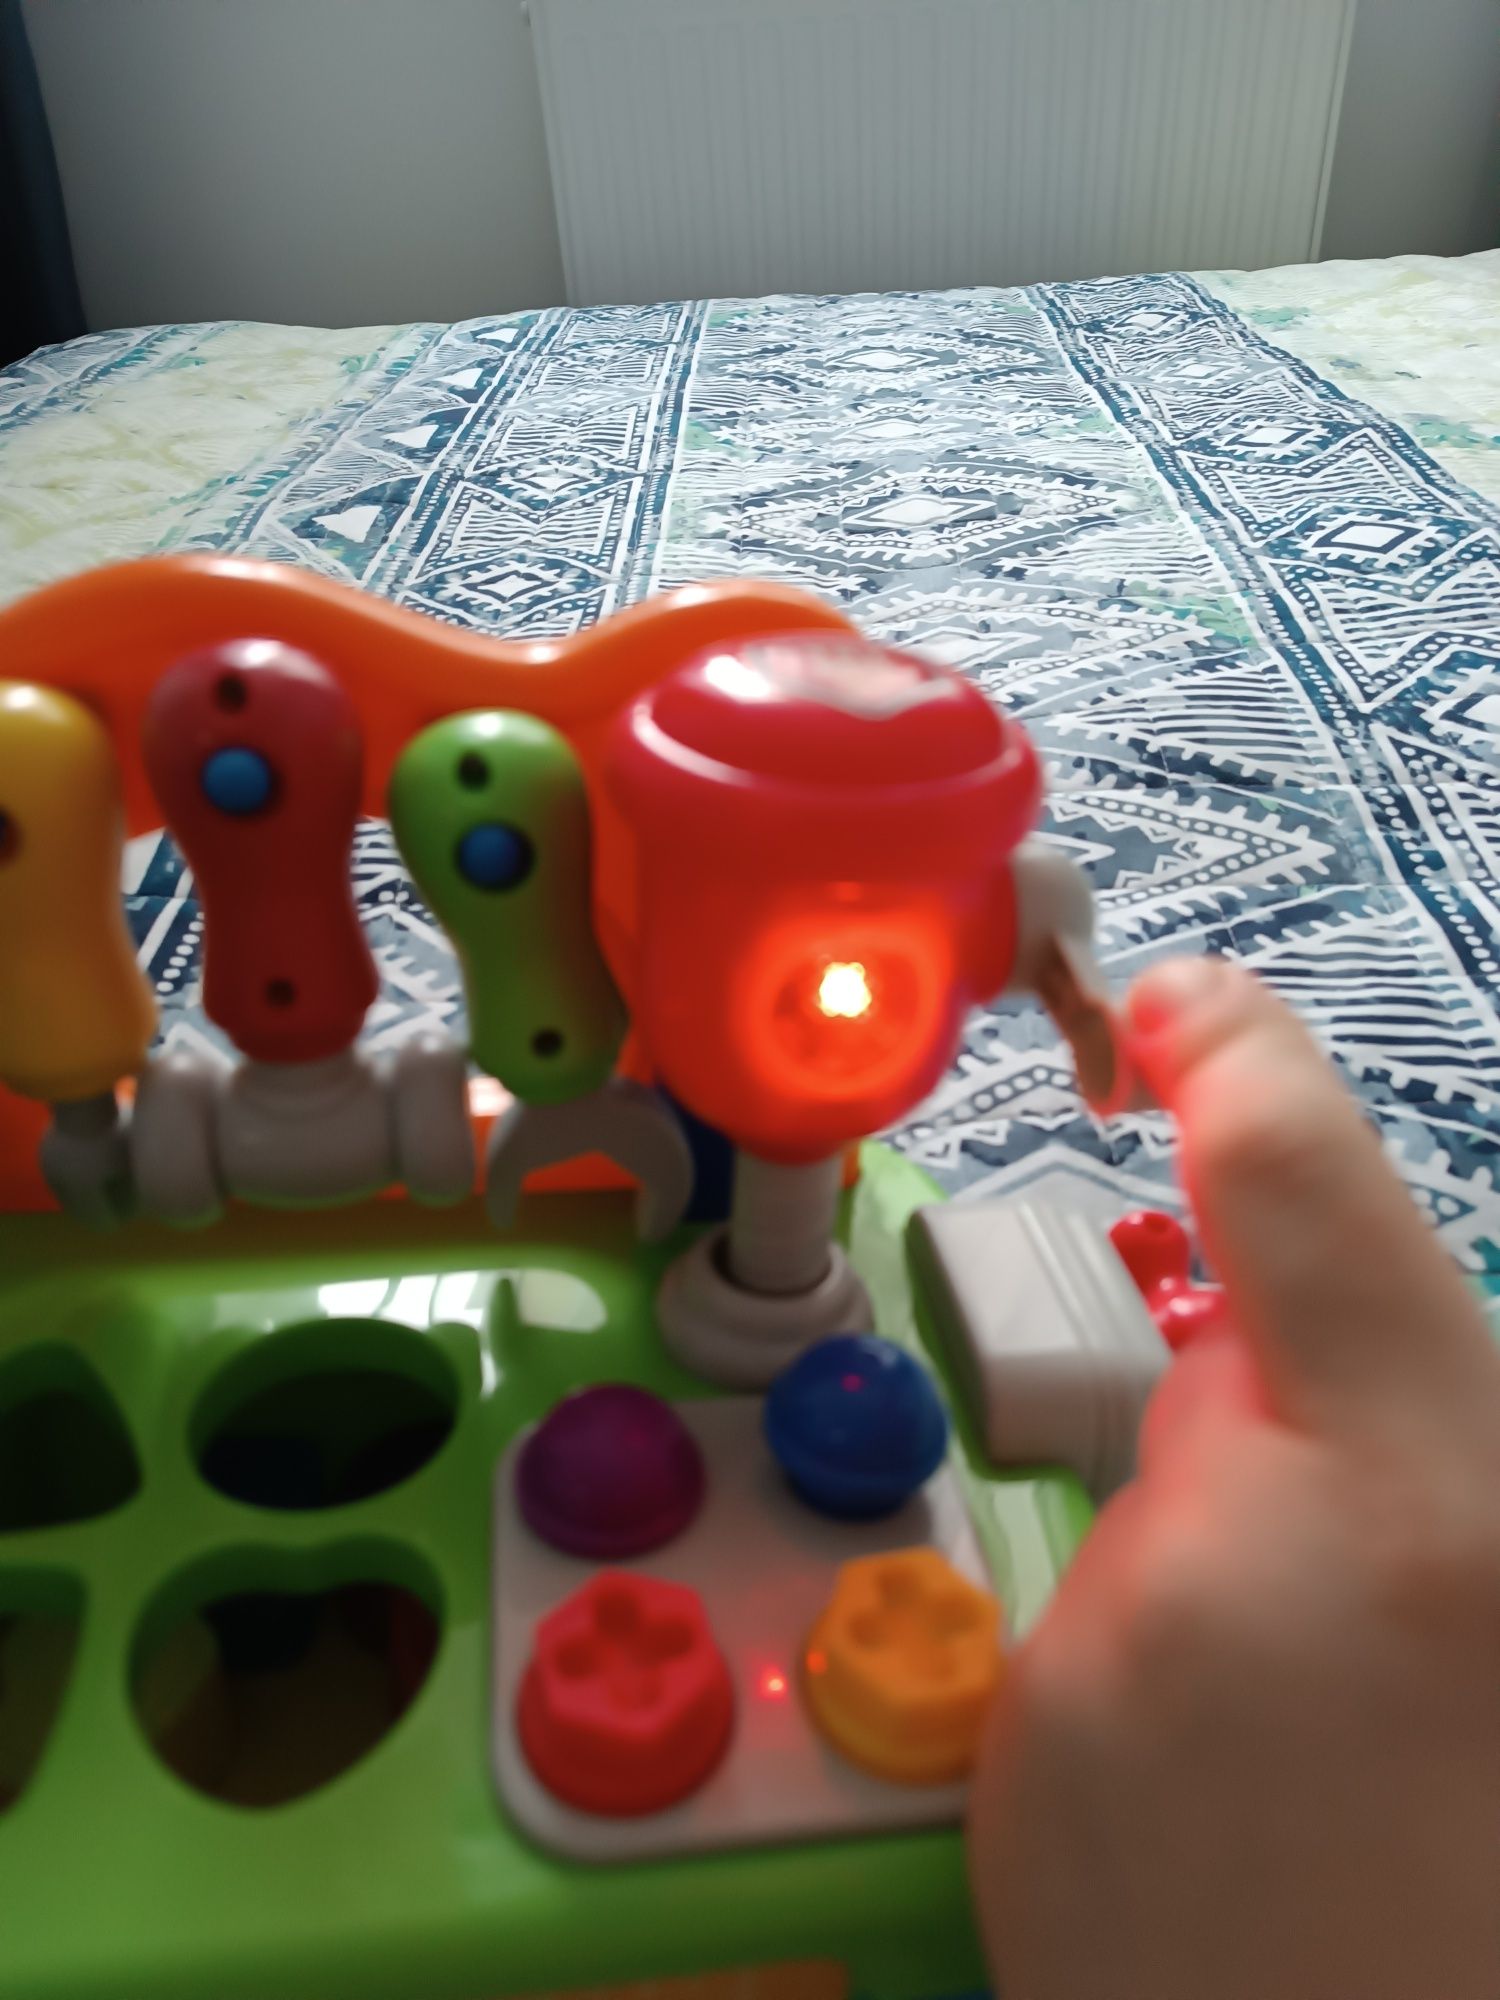 Warsztat interaktywny z narzędziami zabawka